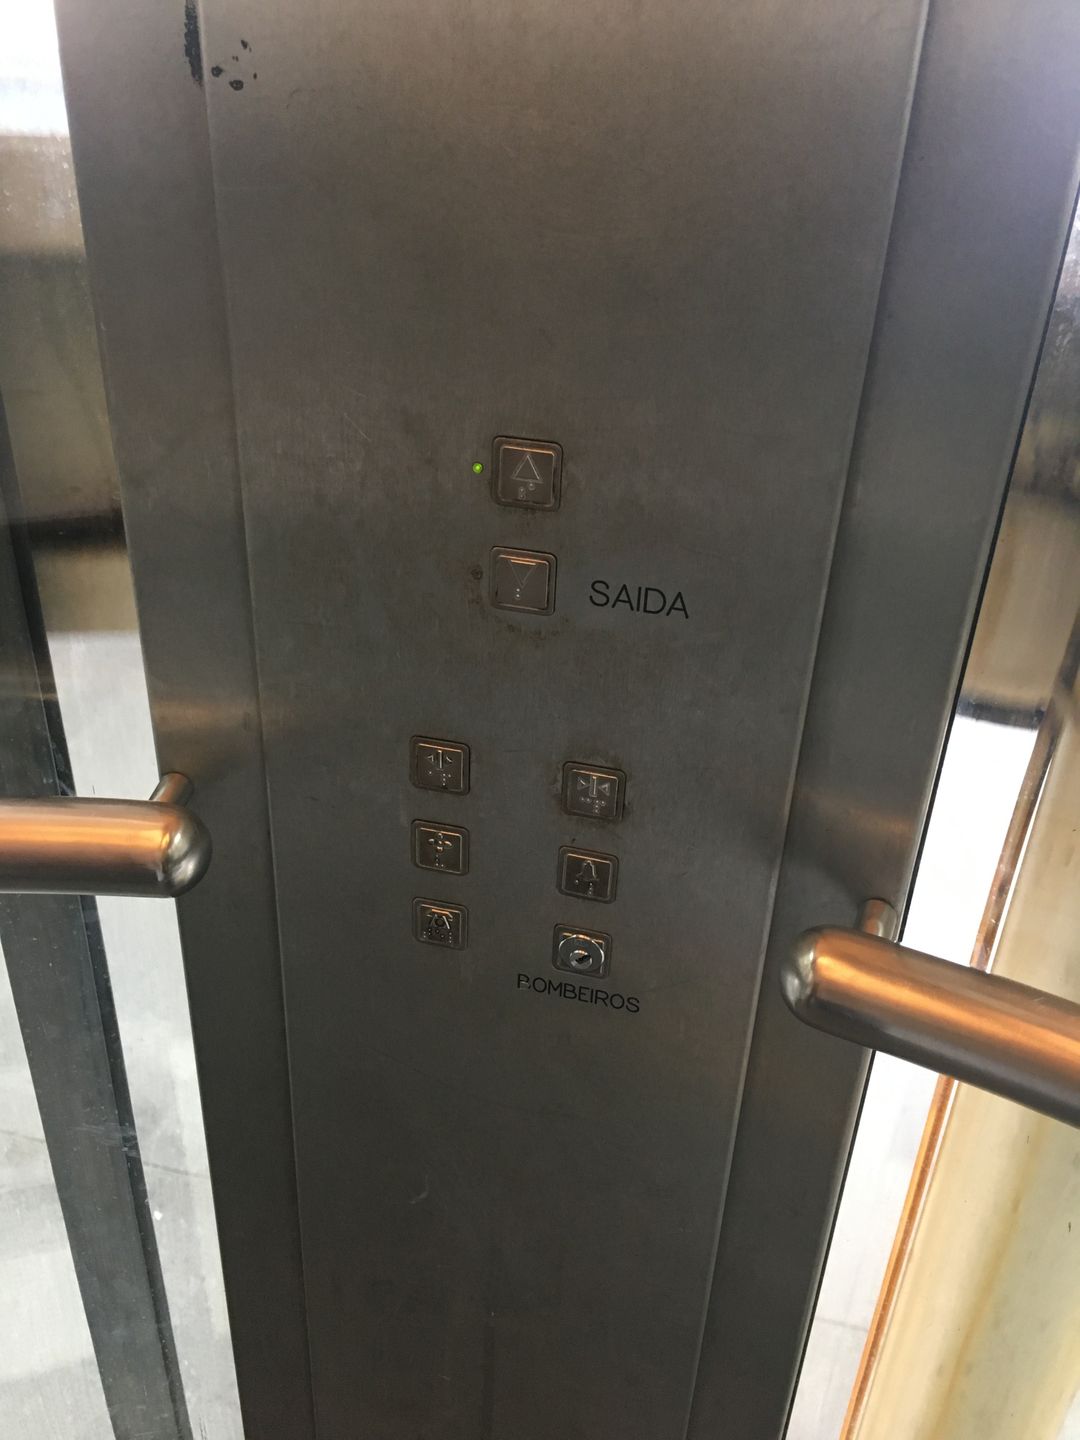 只有上下樓鍵/開門 關門鍵&nbsp; SAIDA是出口的意思